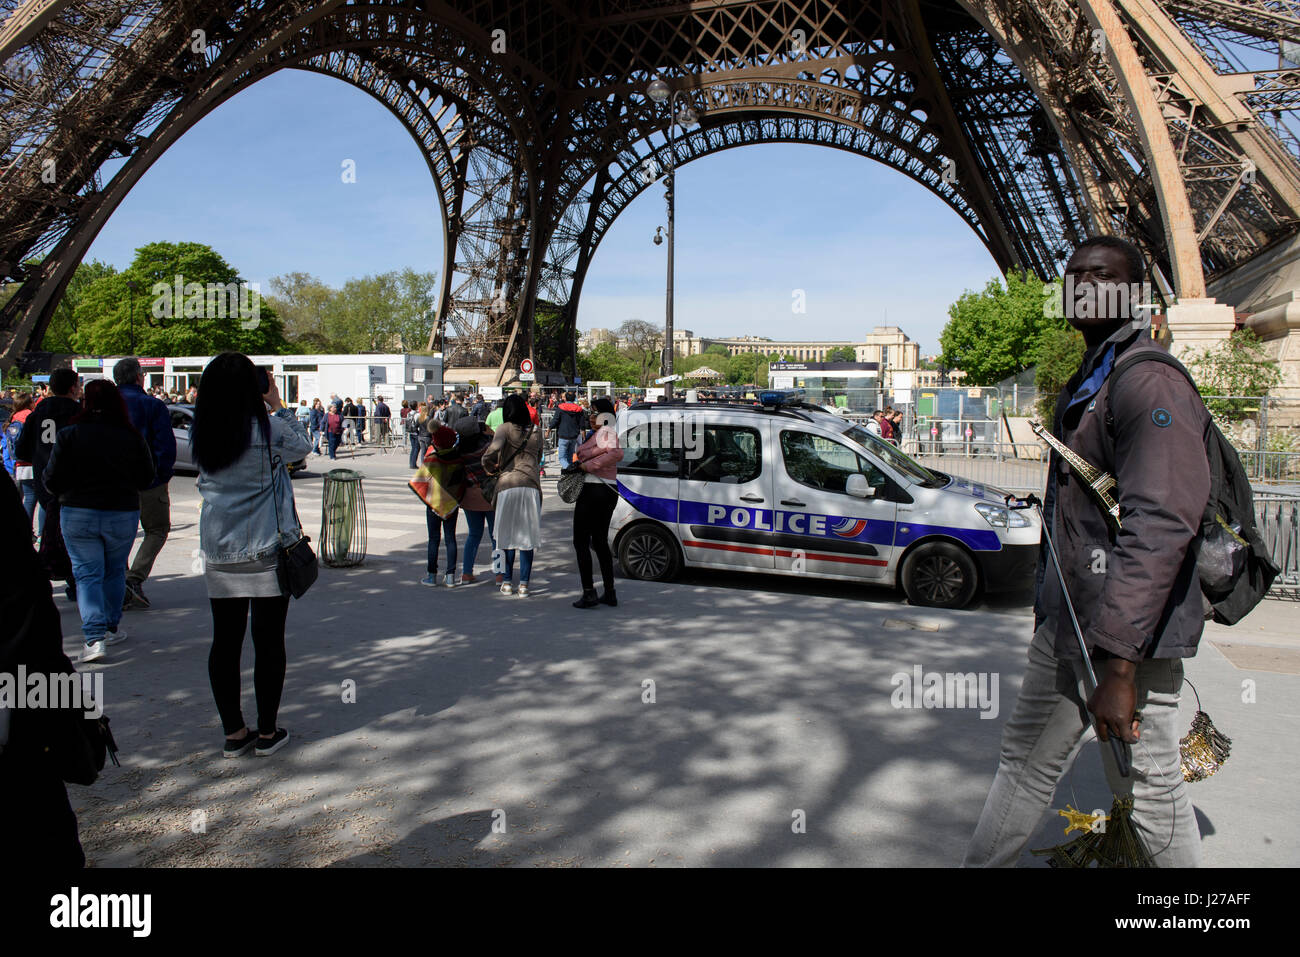 Französische Polizei Auto Überwachung das Gebiet rund um den Eiffelturm in Paris, Frankreich; Straßenhändler mit kleinen Eiffelturm souvenirs Stockfoto